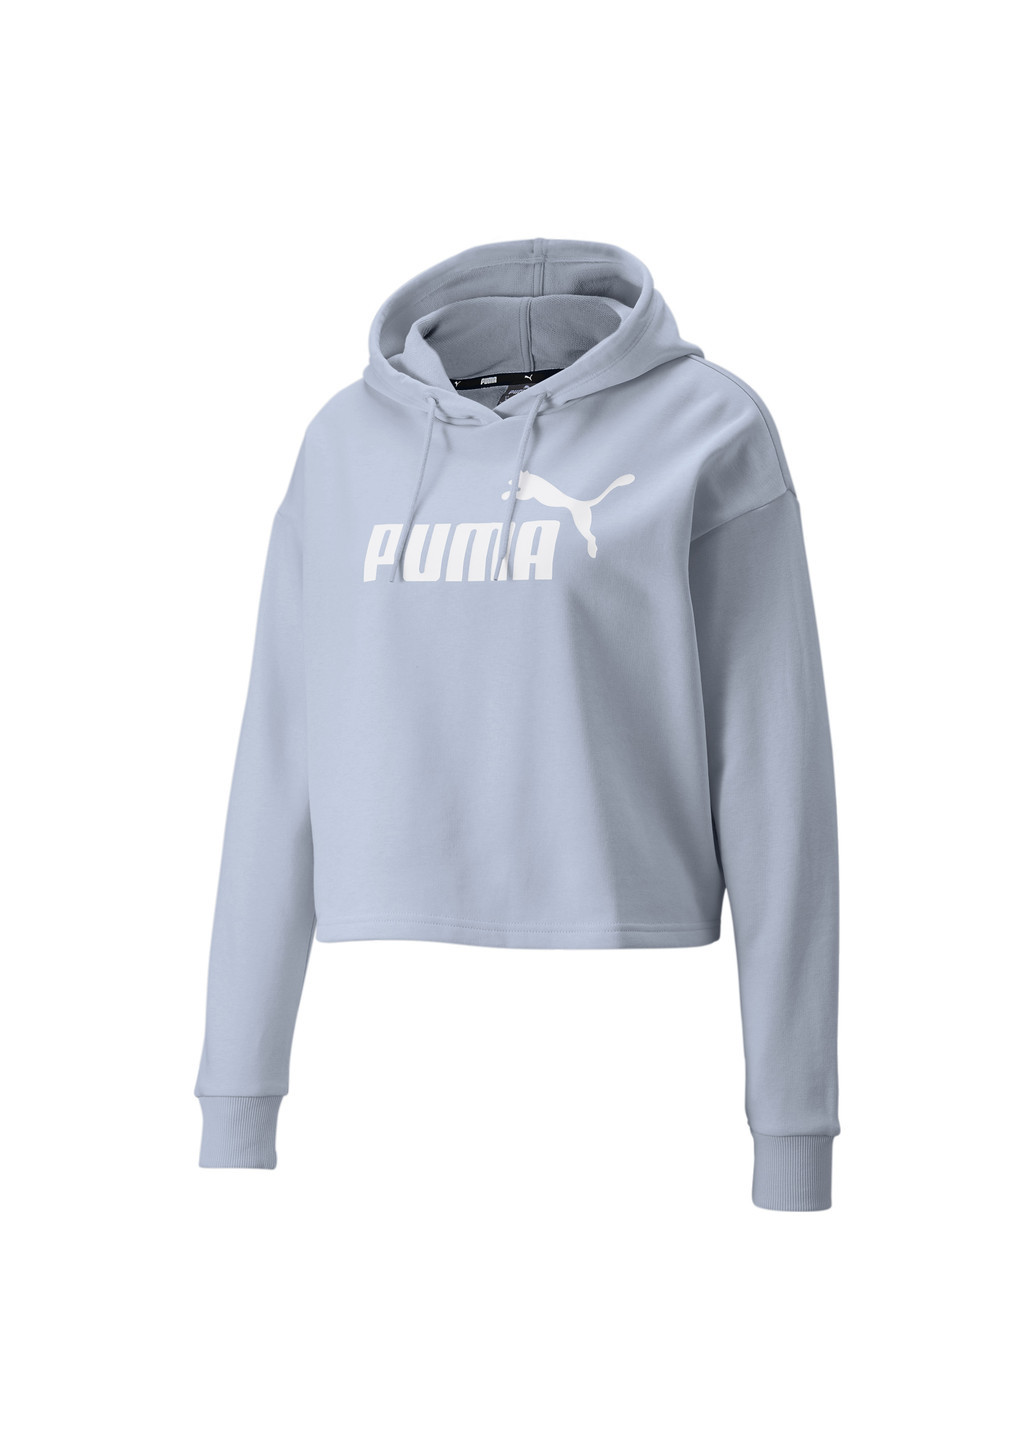 Синее спортивное толстовка essentials logo cropped women's hoodie Puma однотонное